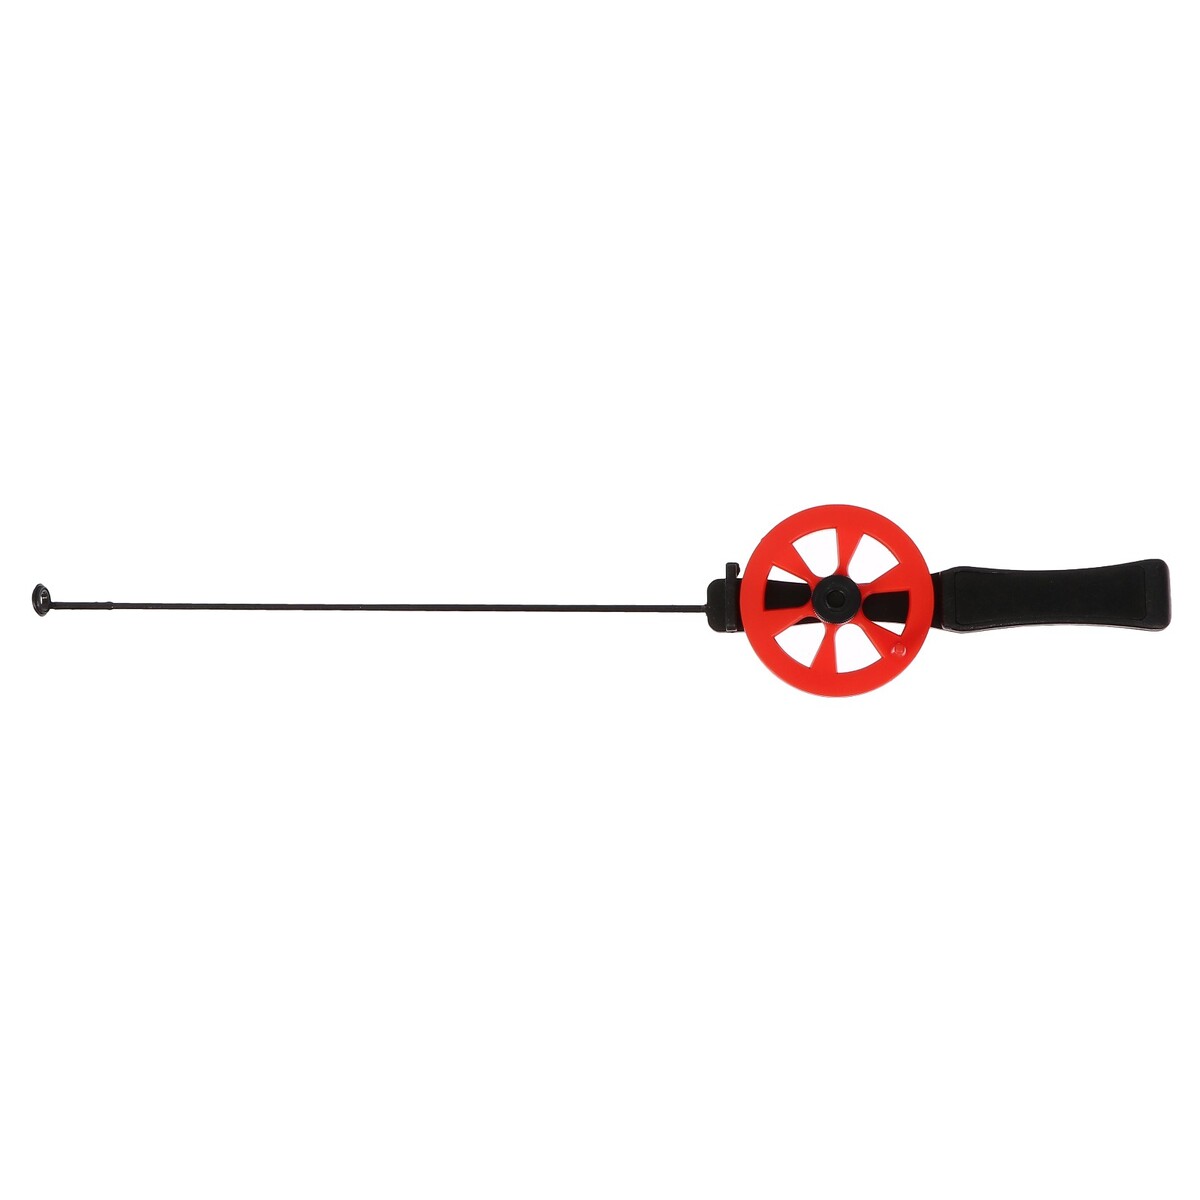 Удочка зимняя, ручка пластик, диаметр катушки 5.5 см, направляющая лески, красная, hfb-15 No brand